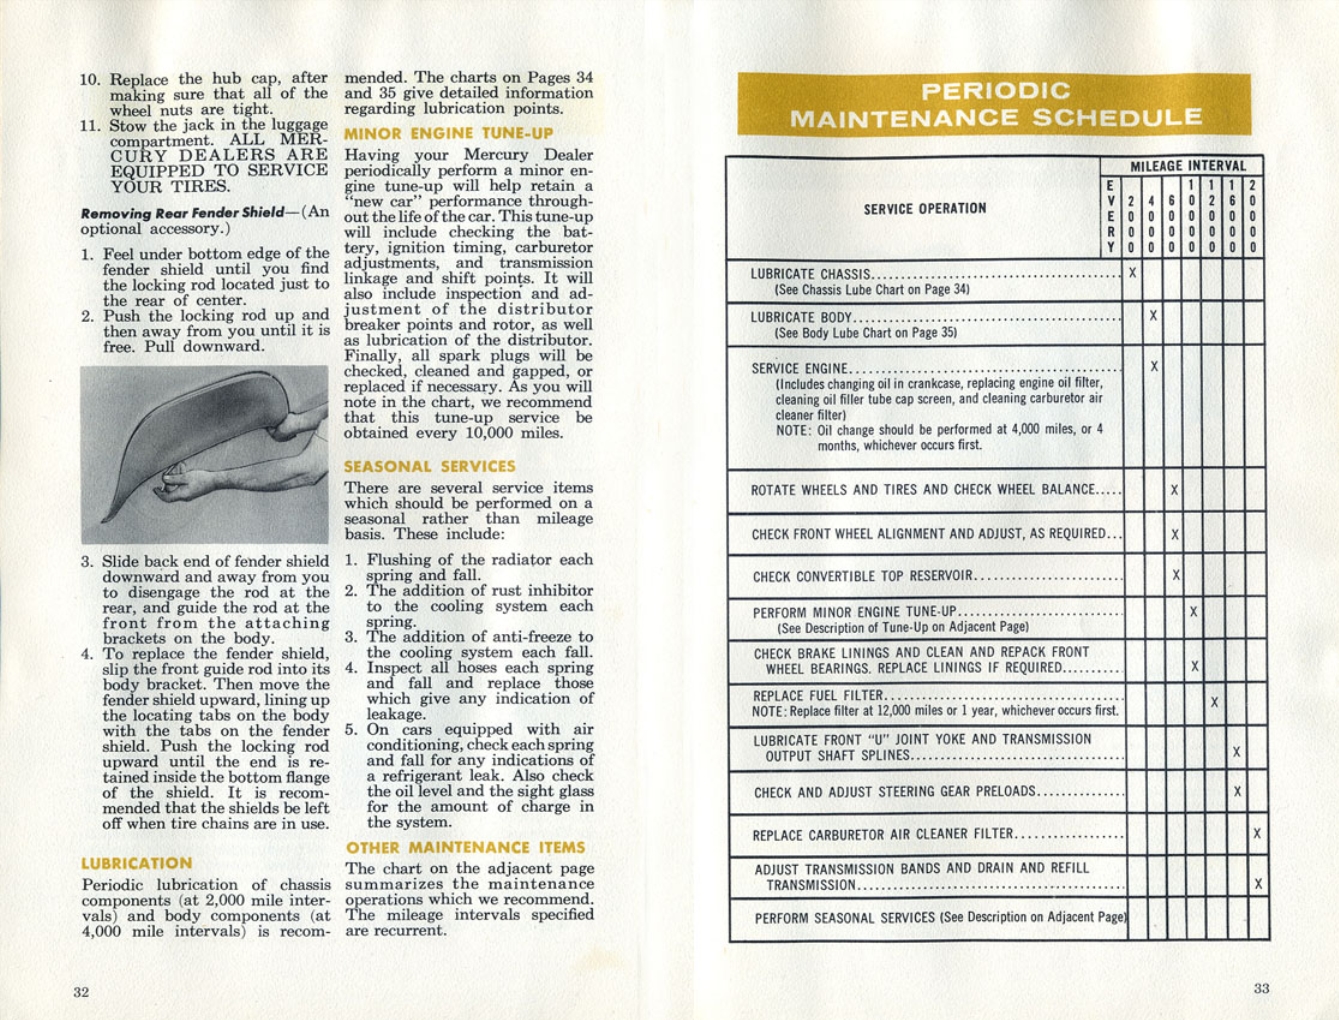 n_1960 Mercury Manual-32-33.jpg